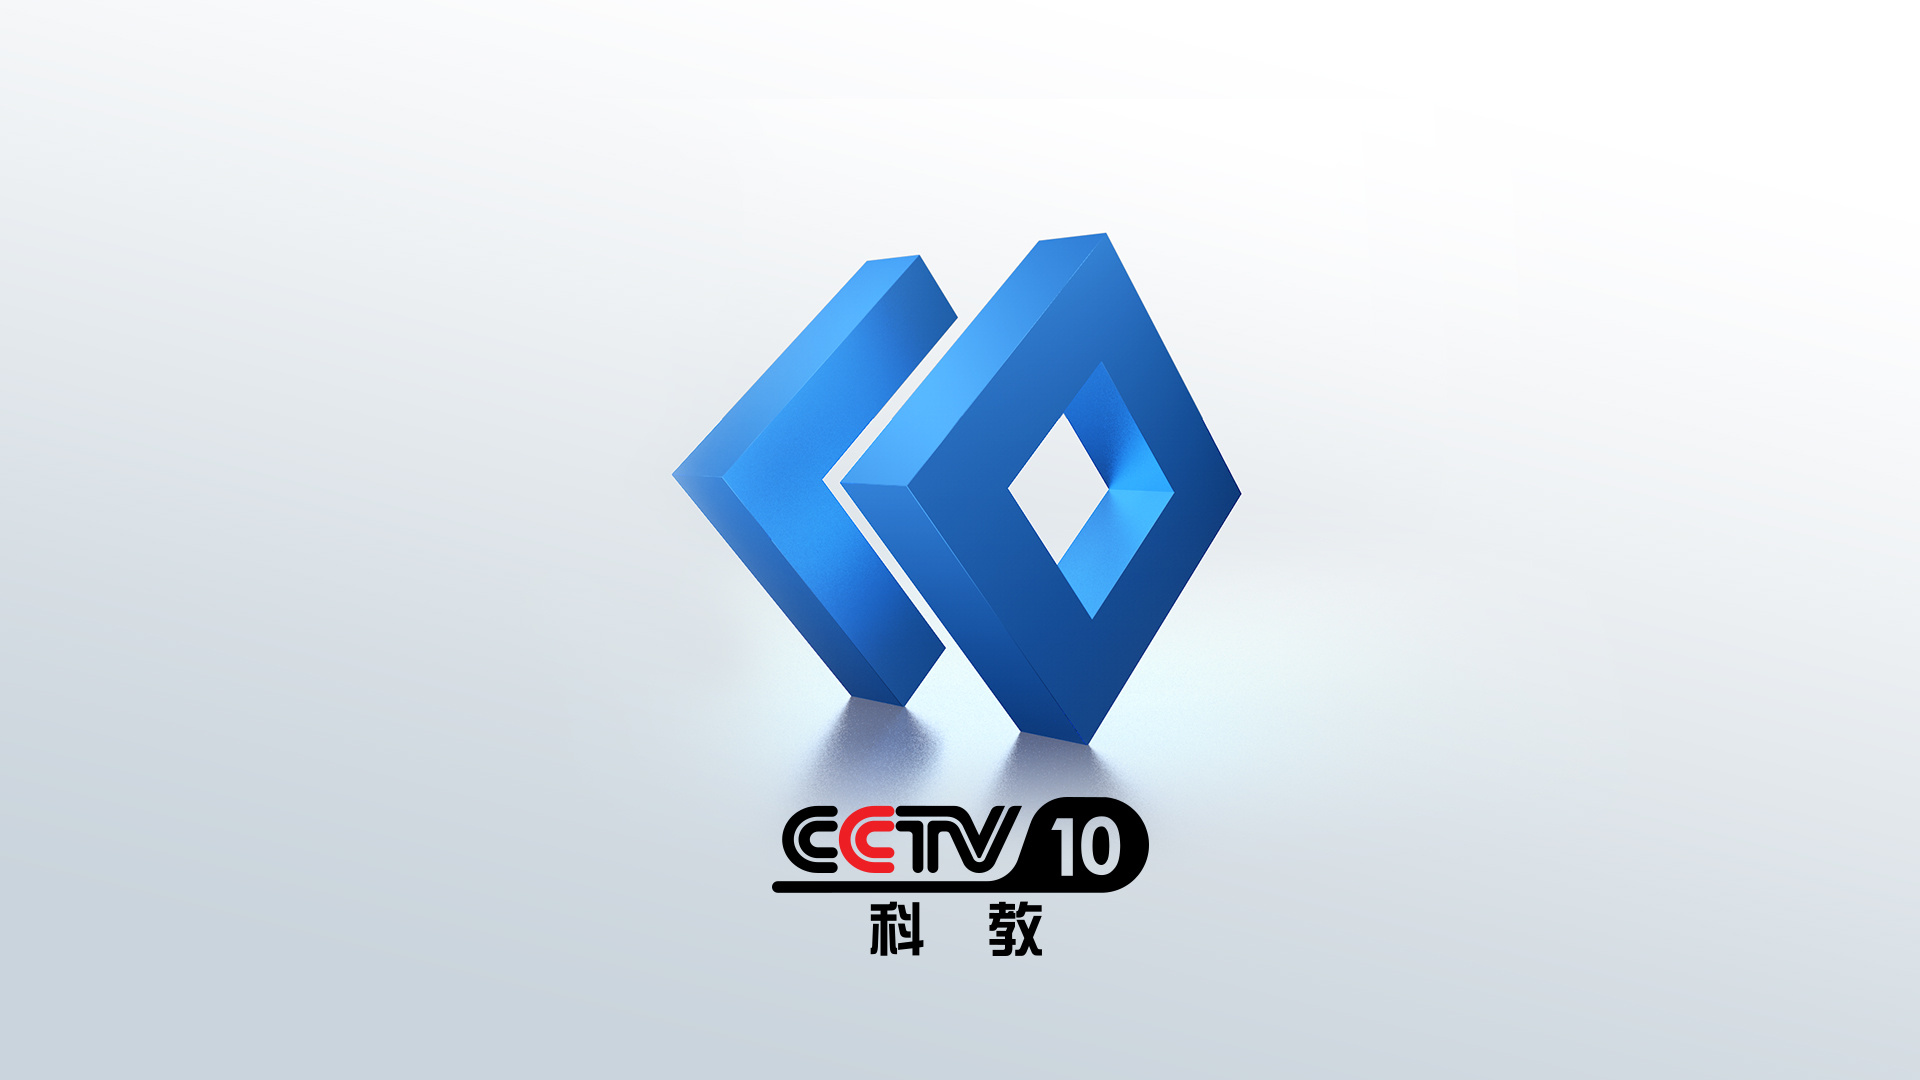 2019年cctv10科教频道改版logo设计